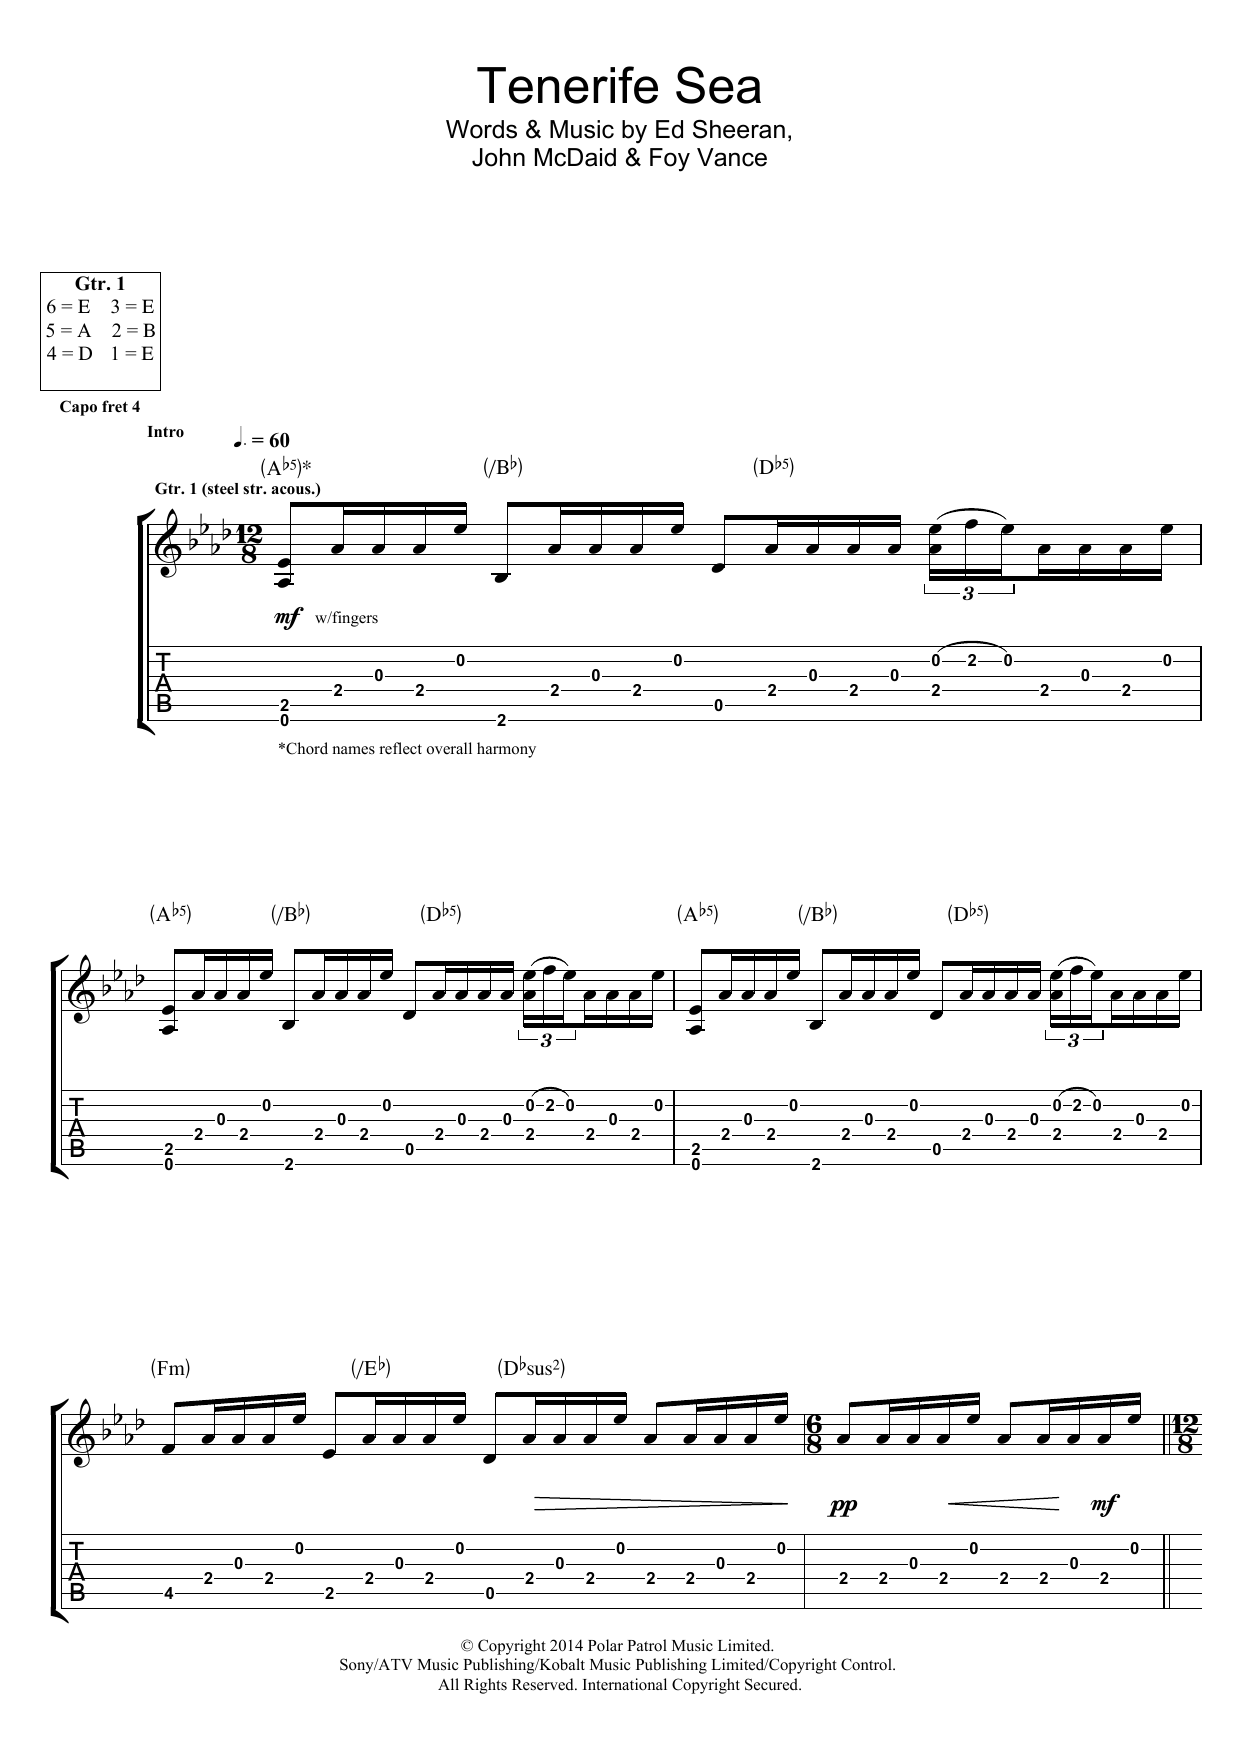 Ed Sheeran Tenerife Sea Sheet Music Notes & Chords for Ukulele - Download or Print PDF